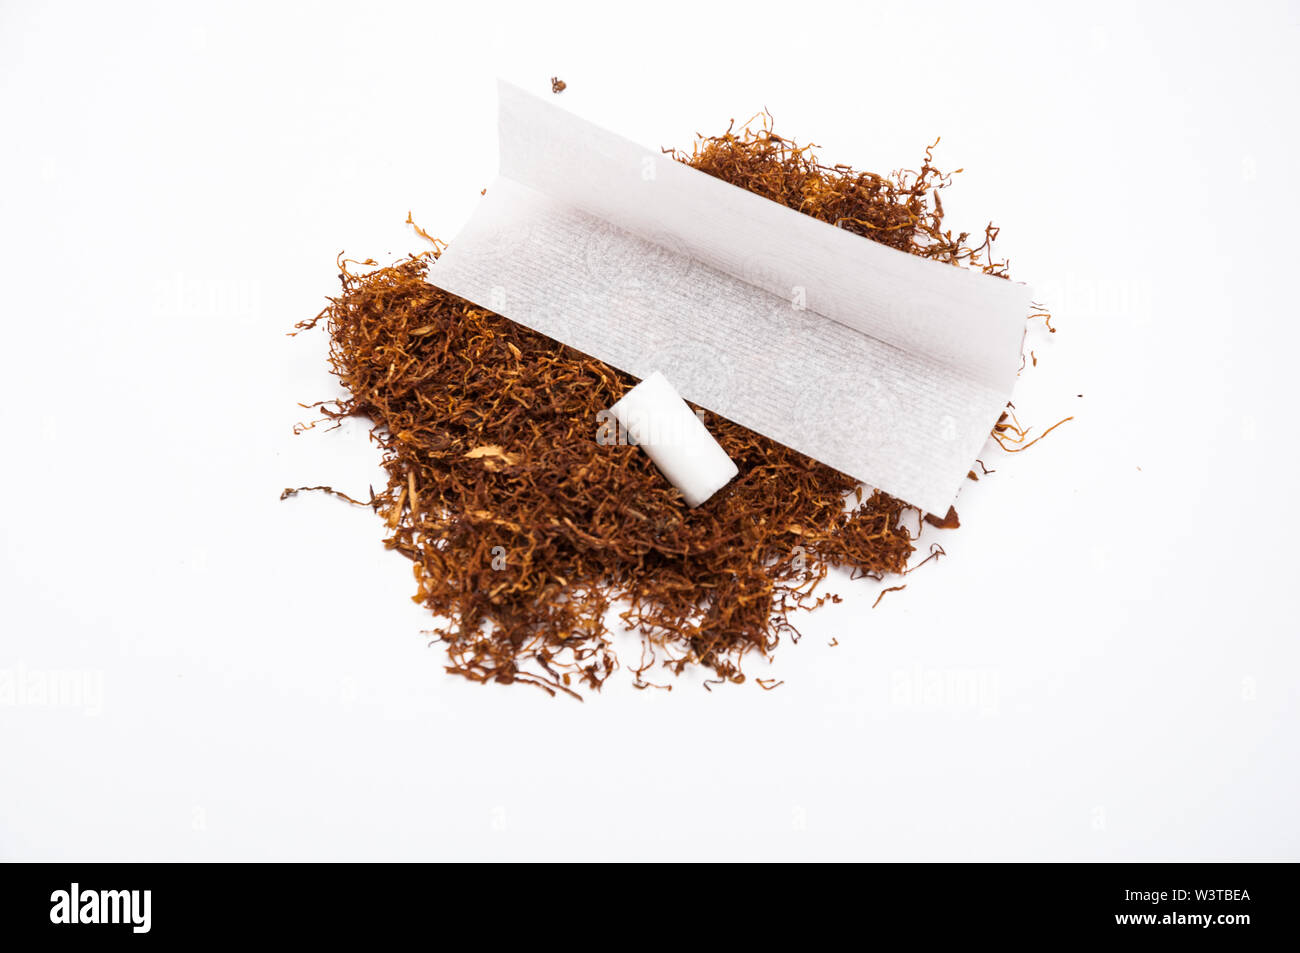 Pequeños Filtros De Cigarrillos Y Tabaco De Liar A Mano En El